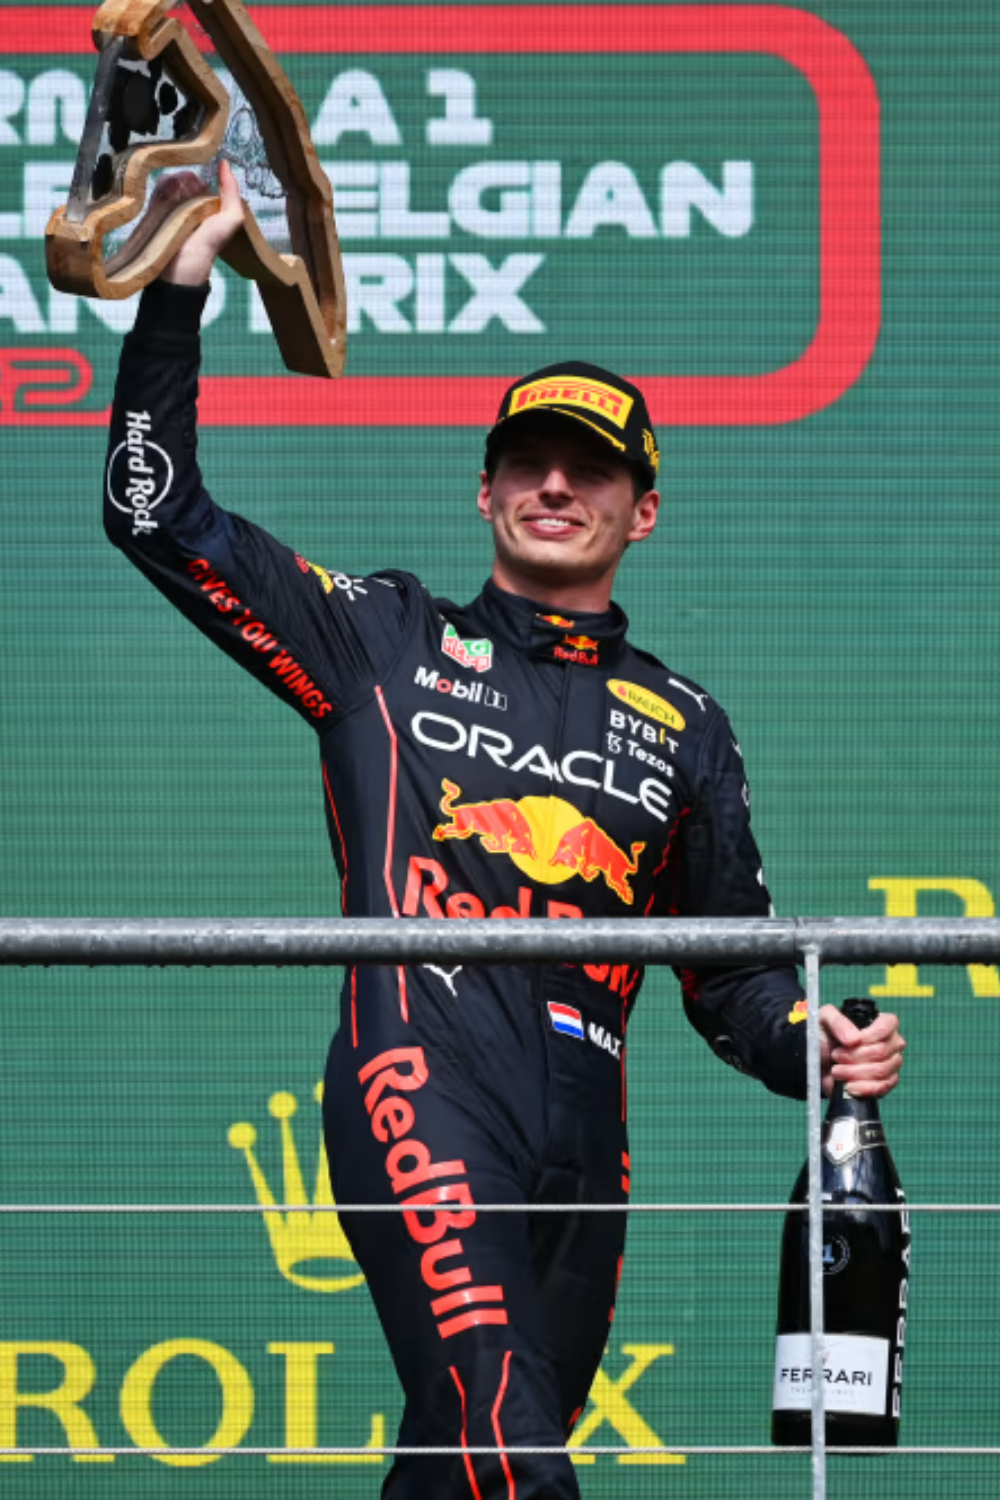 The 2022 Belgian GP Winner, Max Verstappen